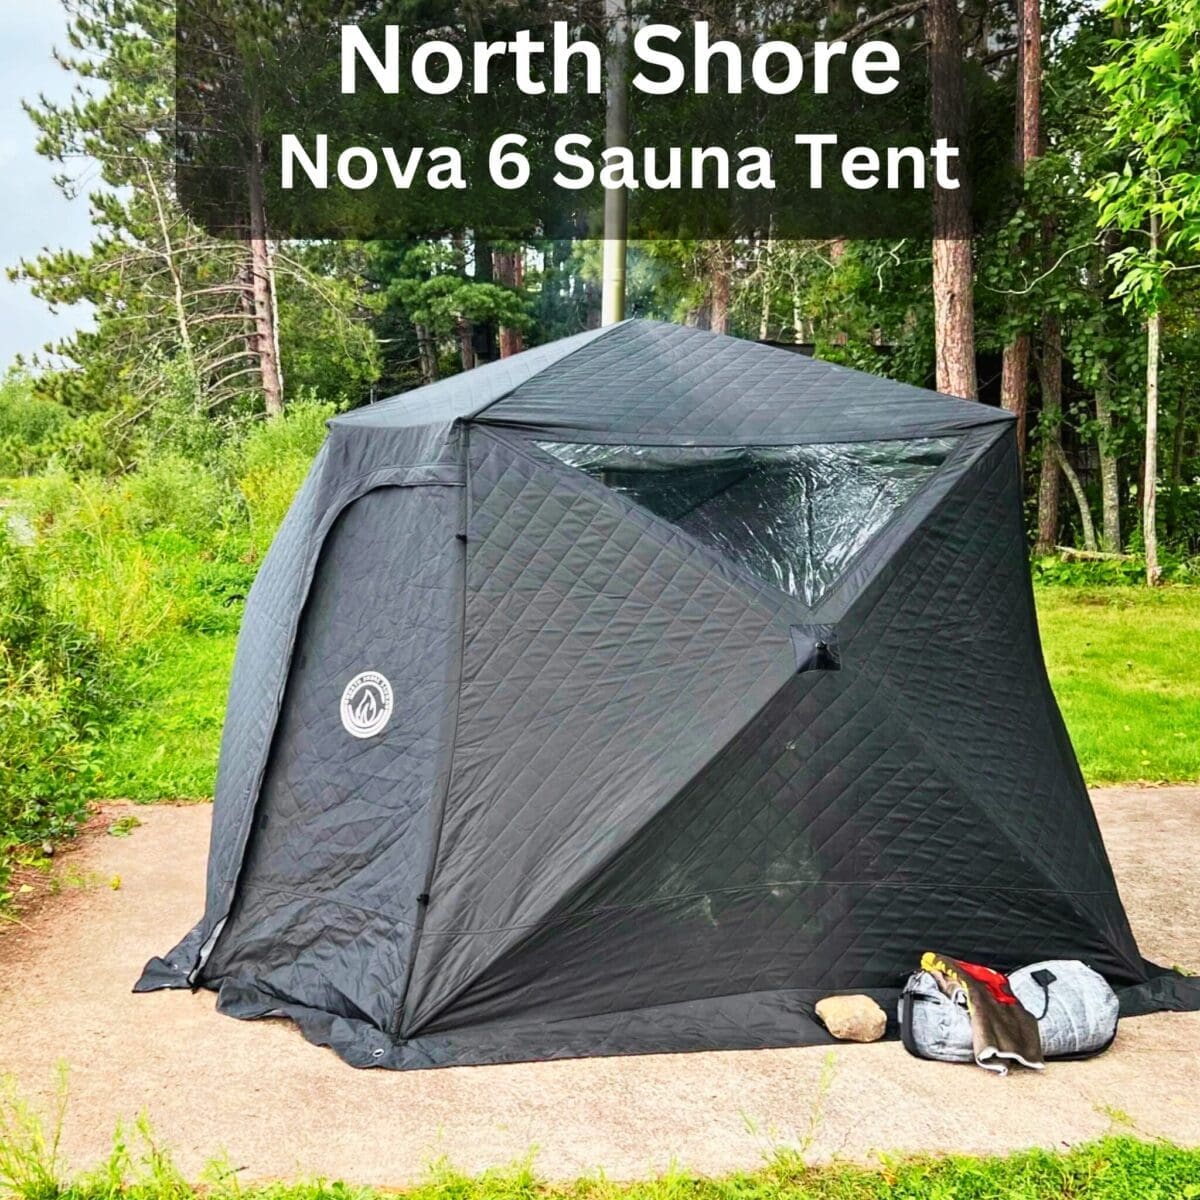 North Shore Nova 6 Sauna Tent